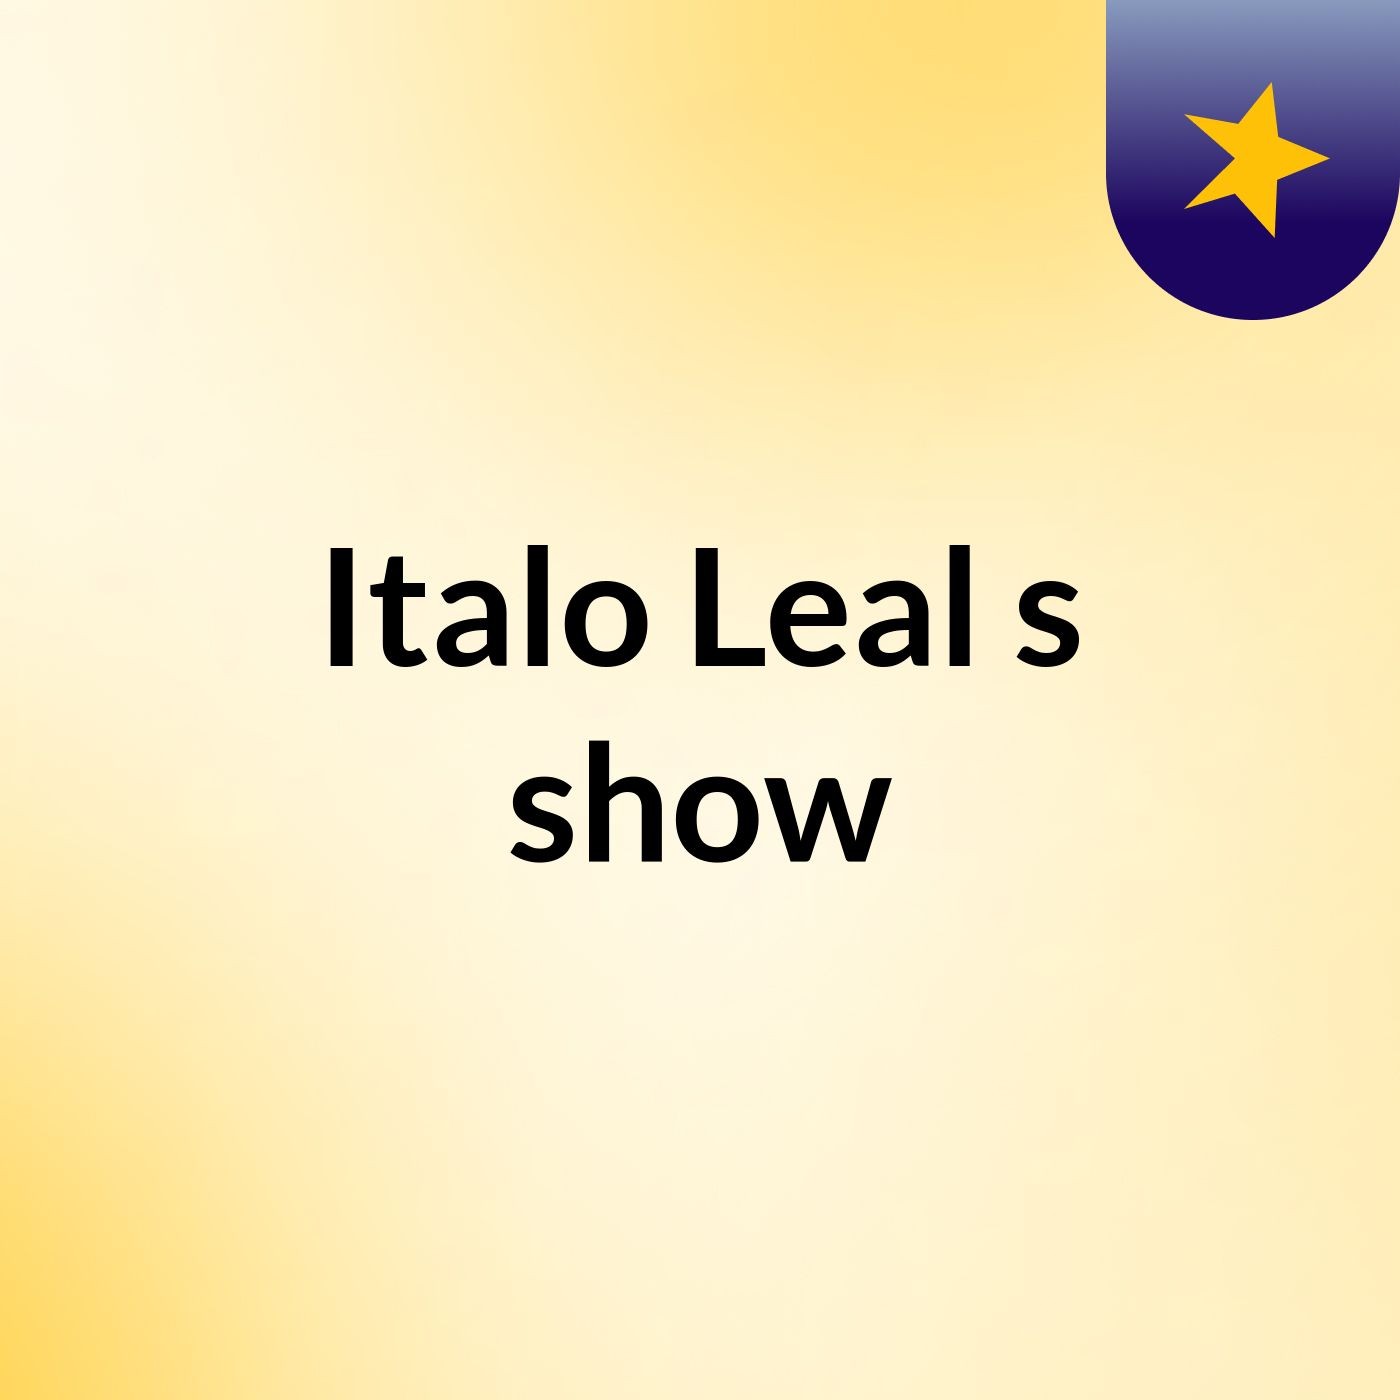 Italo Leal's show